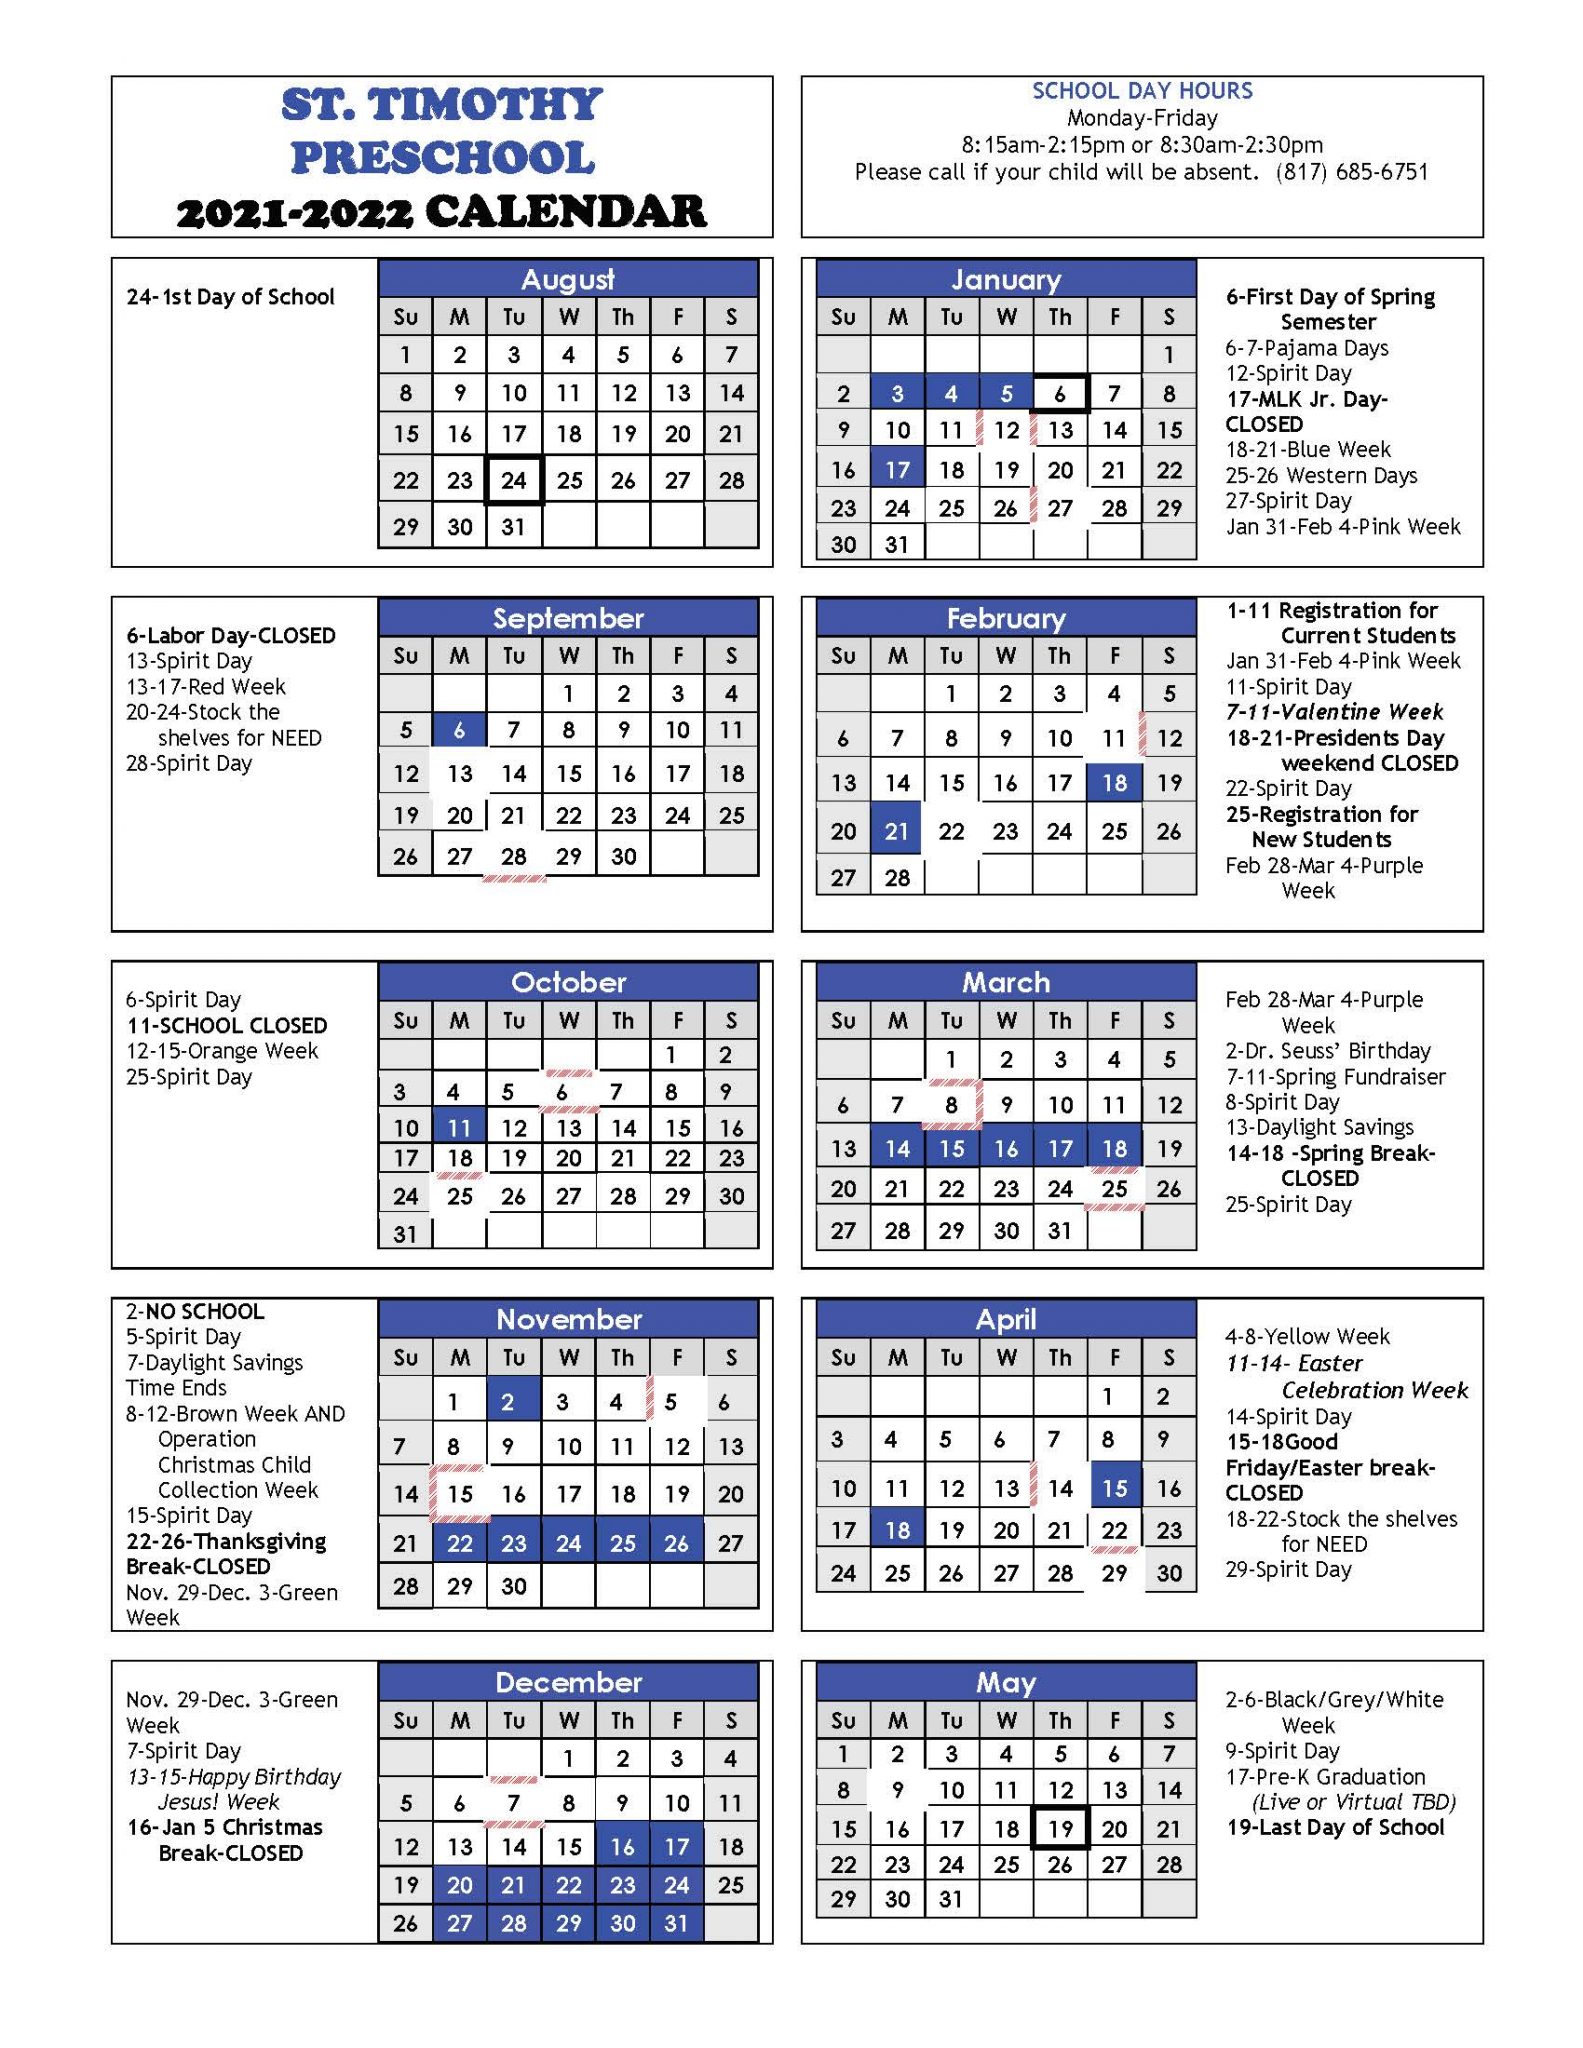 2021-2022-school-year-calendar-st-timothy-preschool